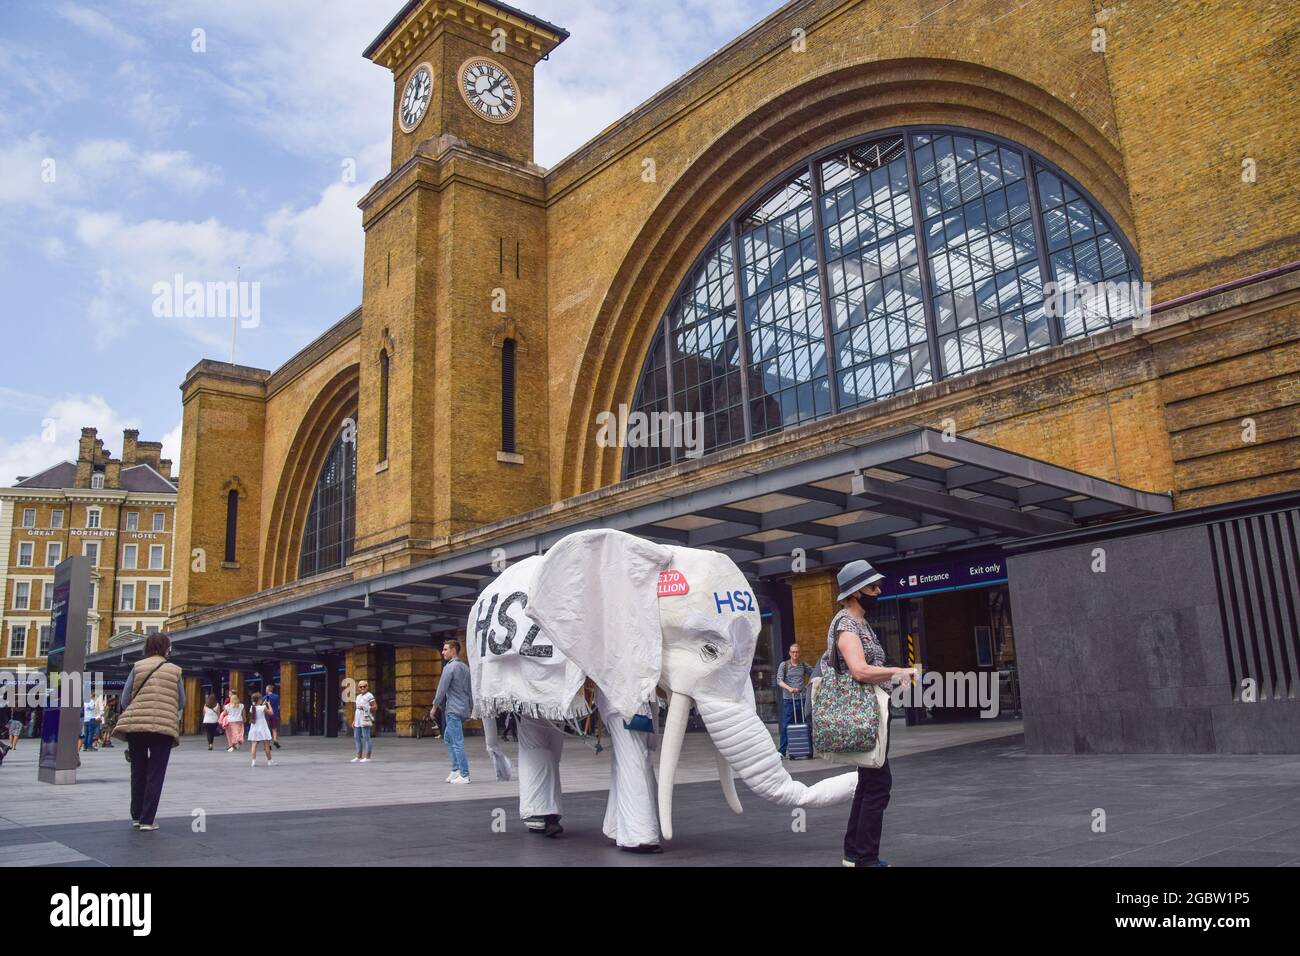 Londres, Reino Unido. 5th de agosto de 2021. Los manifestantes que llevan un traje de elefante blanco 'HS2' son conducidos fuera de la estación de tren por un manifestante. Los activistas se reunieron fuera de la estación de King's Cross en protesta contra el nuevo sistema ferroviario High Speed 2 (HS2), que los ecologistas dicen que será 'ecológicamente devastador' y costará a los contribuyentes £170 mil millones. (Crédito: Vuk Valcic/Alamy Live News) Foto de stock